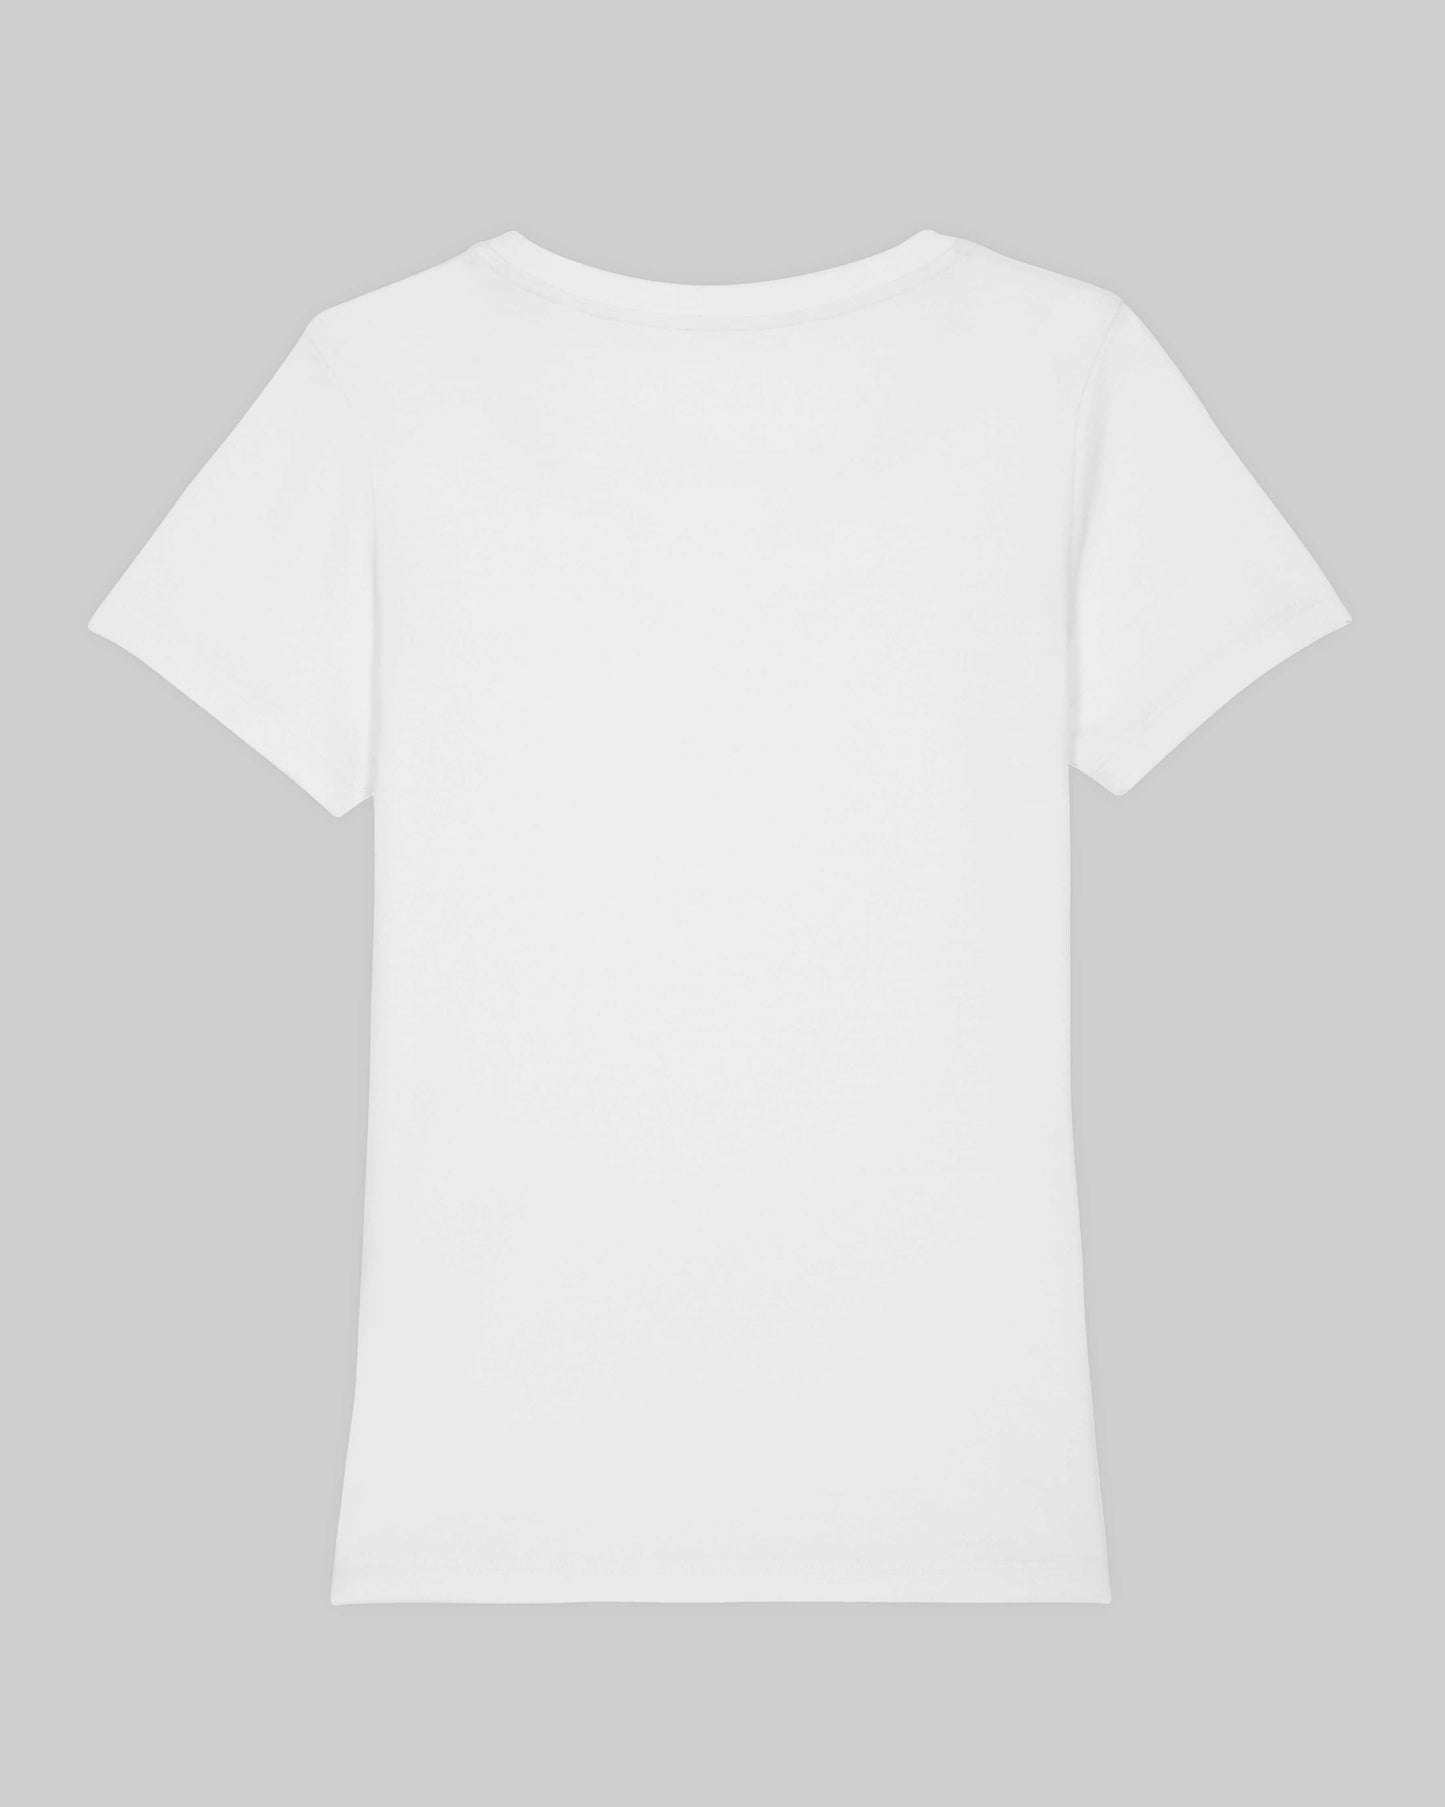 EINHORST® Organic Shirt tailliert in "Weiß" mit dem Motiv "proud Regenbogen" in der Kombination bunter Regenbogen mit schwarzer Schrift, Bild von Shirt von hinten